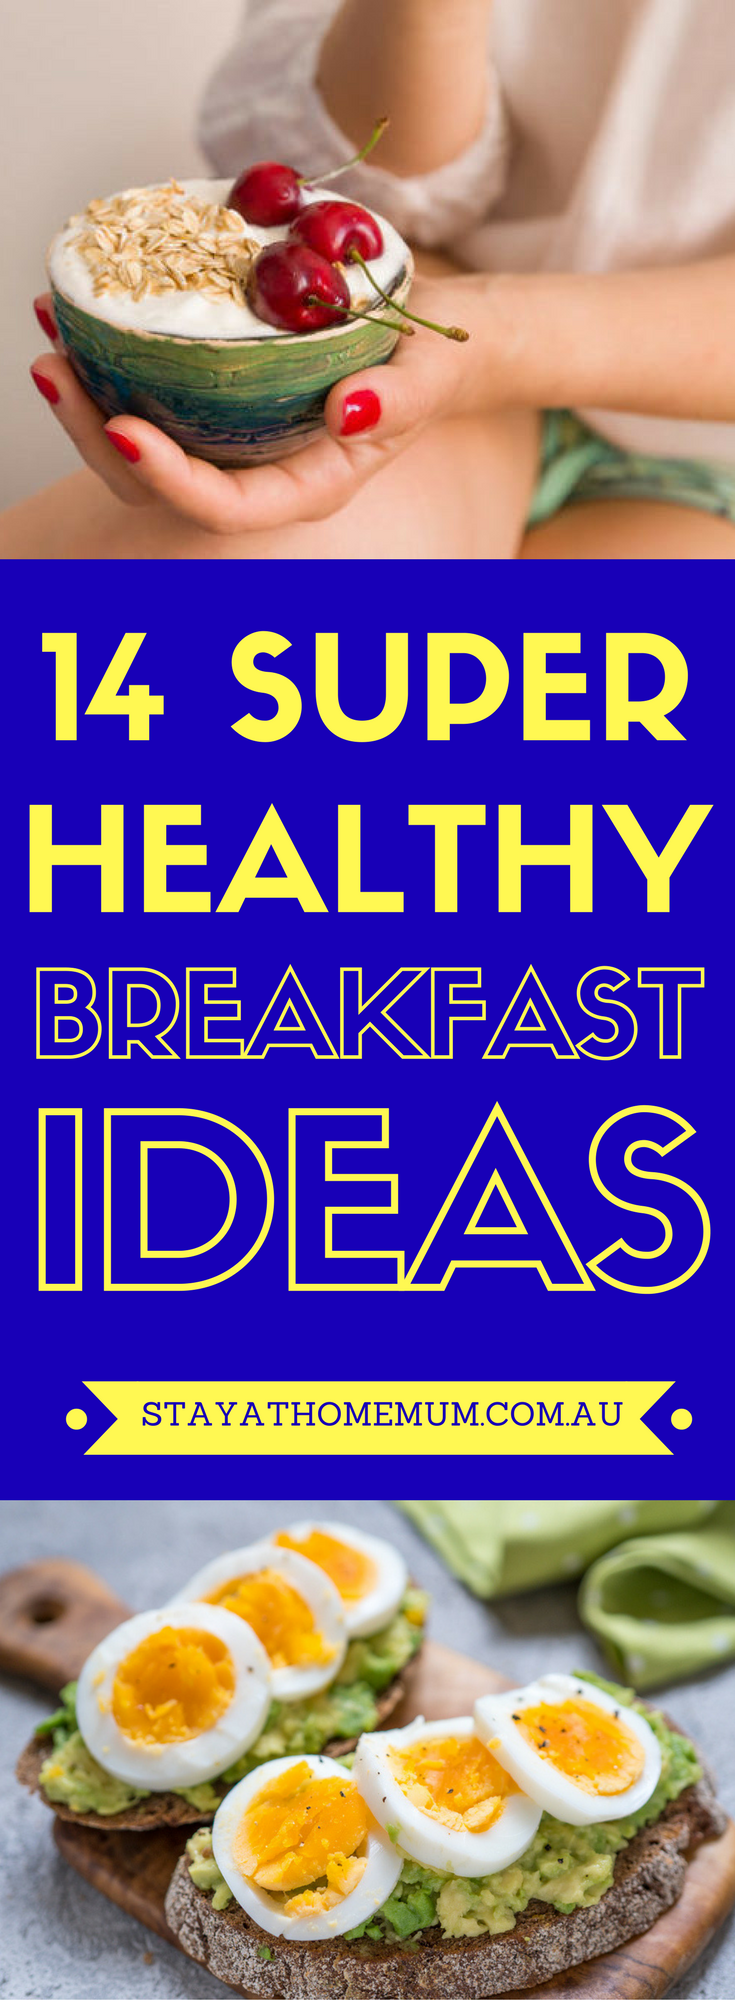 14 Super Healthy Breakfast Ideas